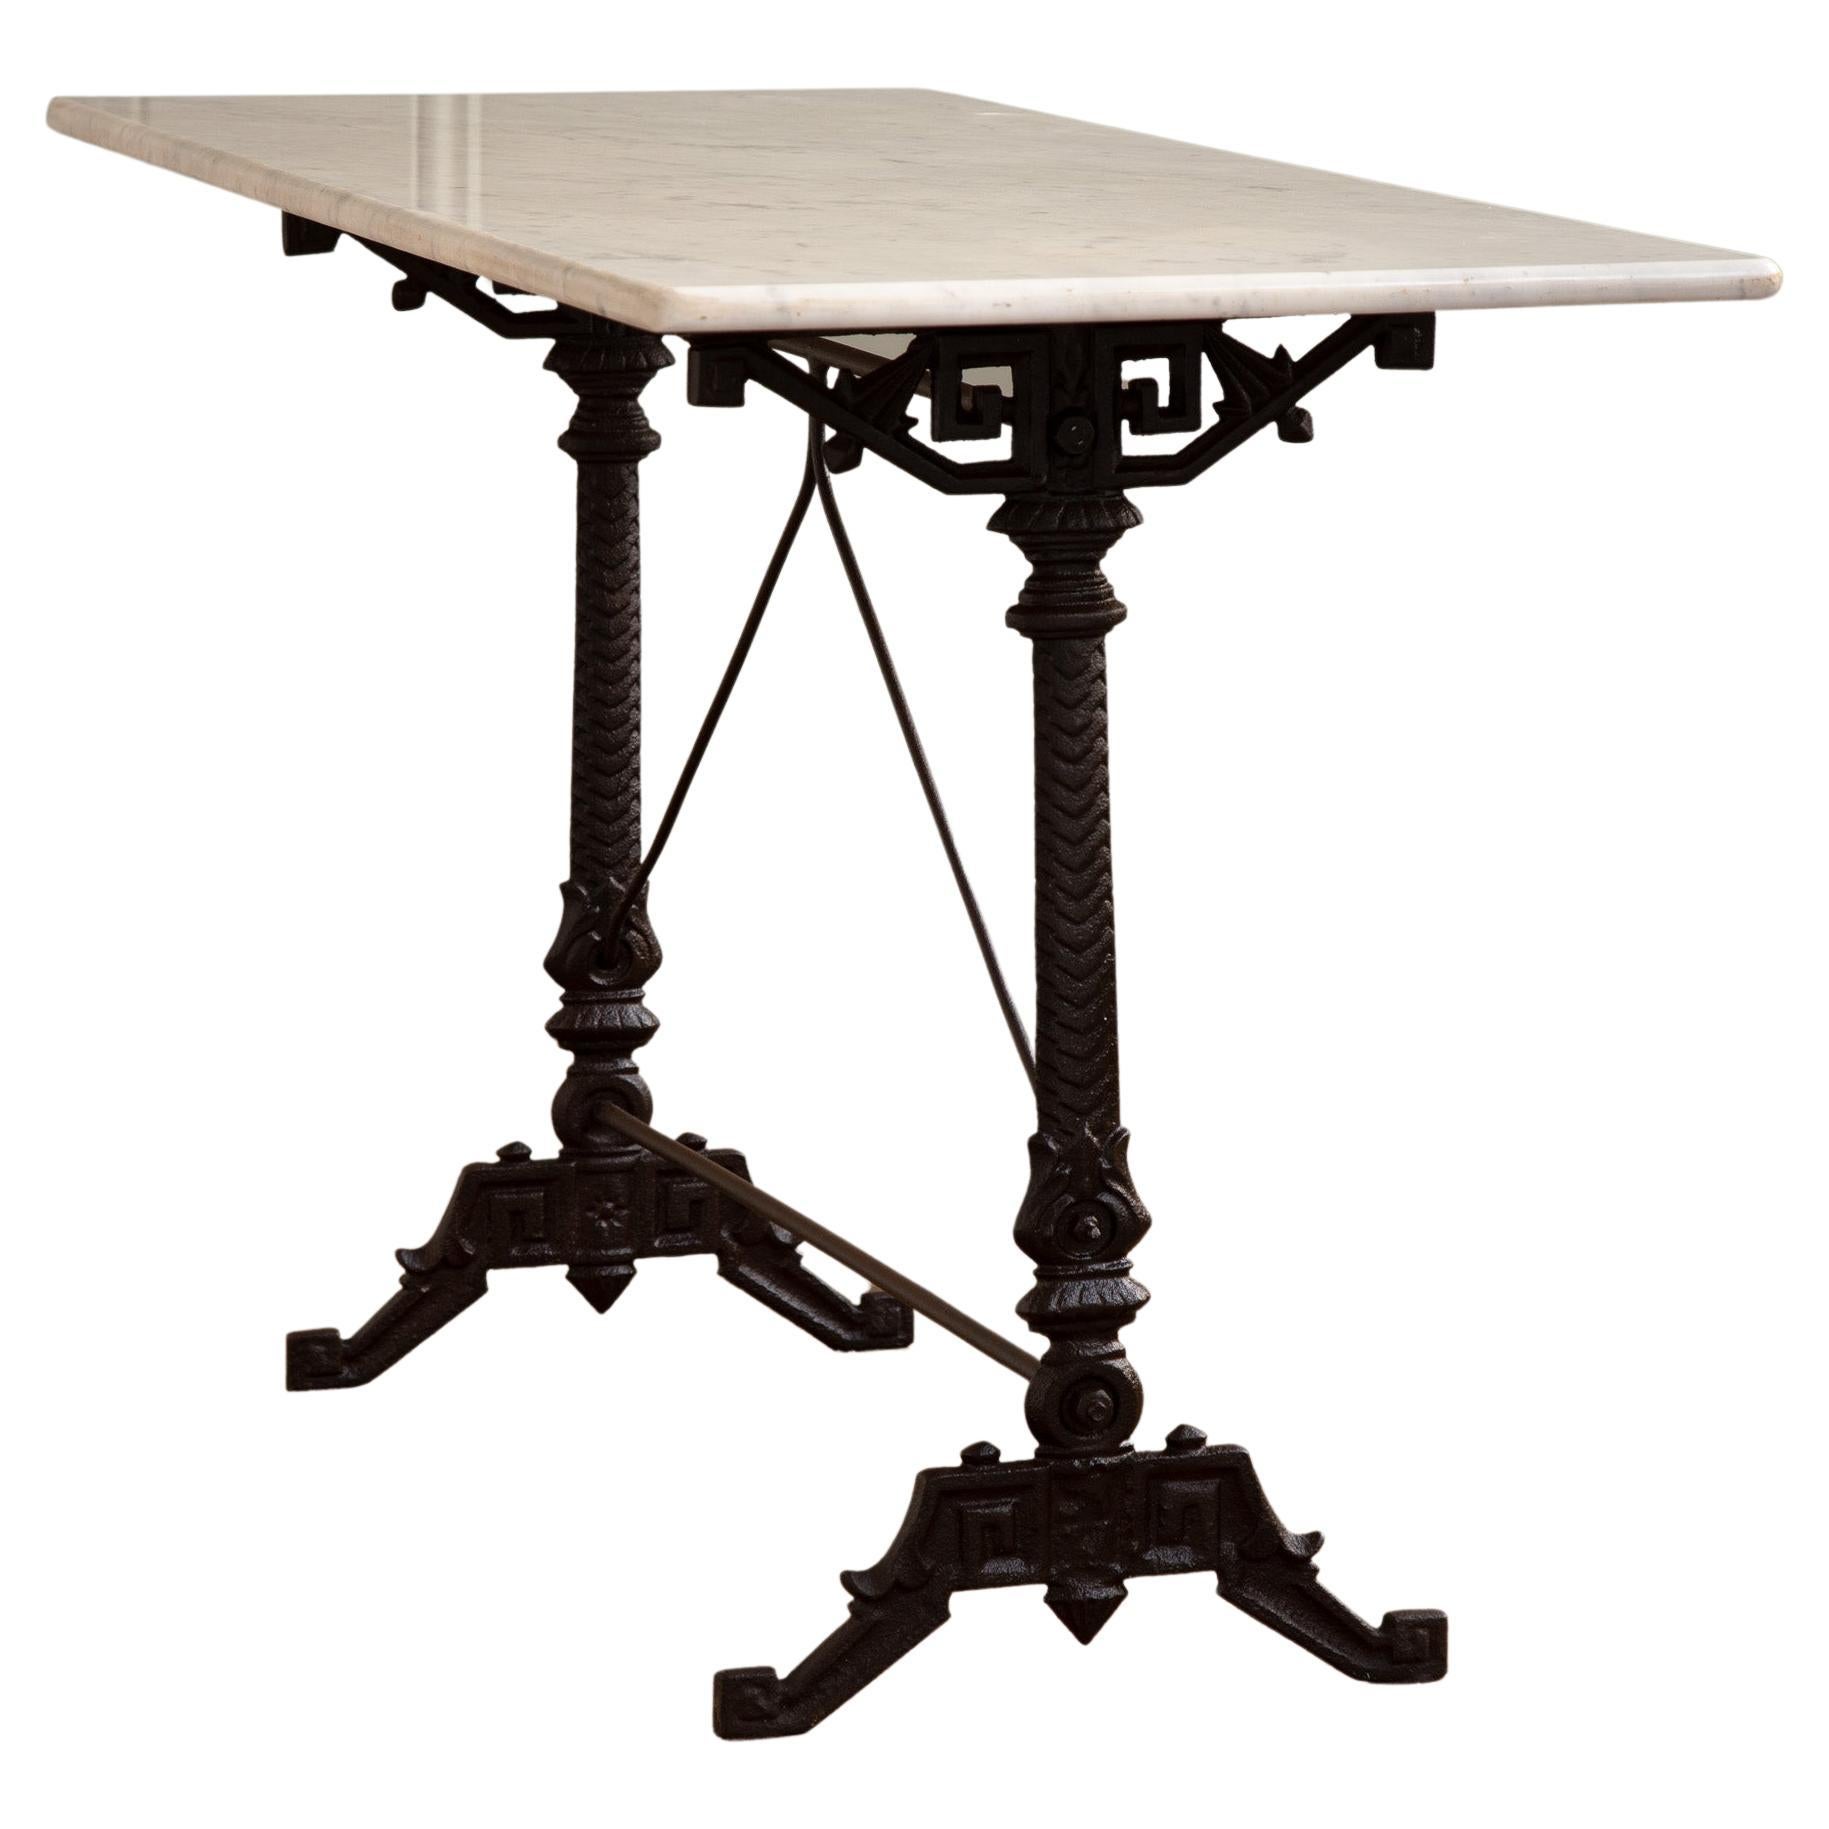 Art Nouveau Cast Iron Bistro Table/Garden Table with Carrara Marble Top